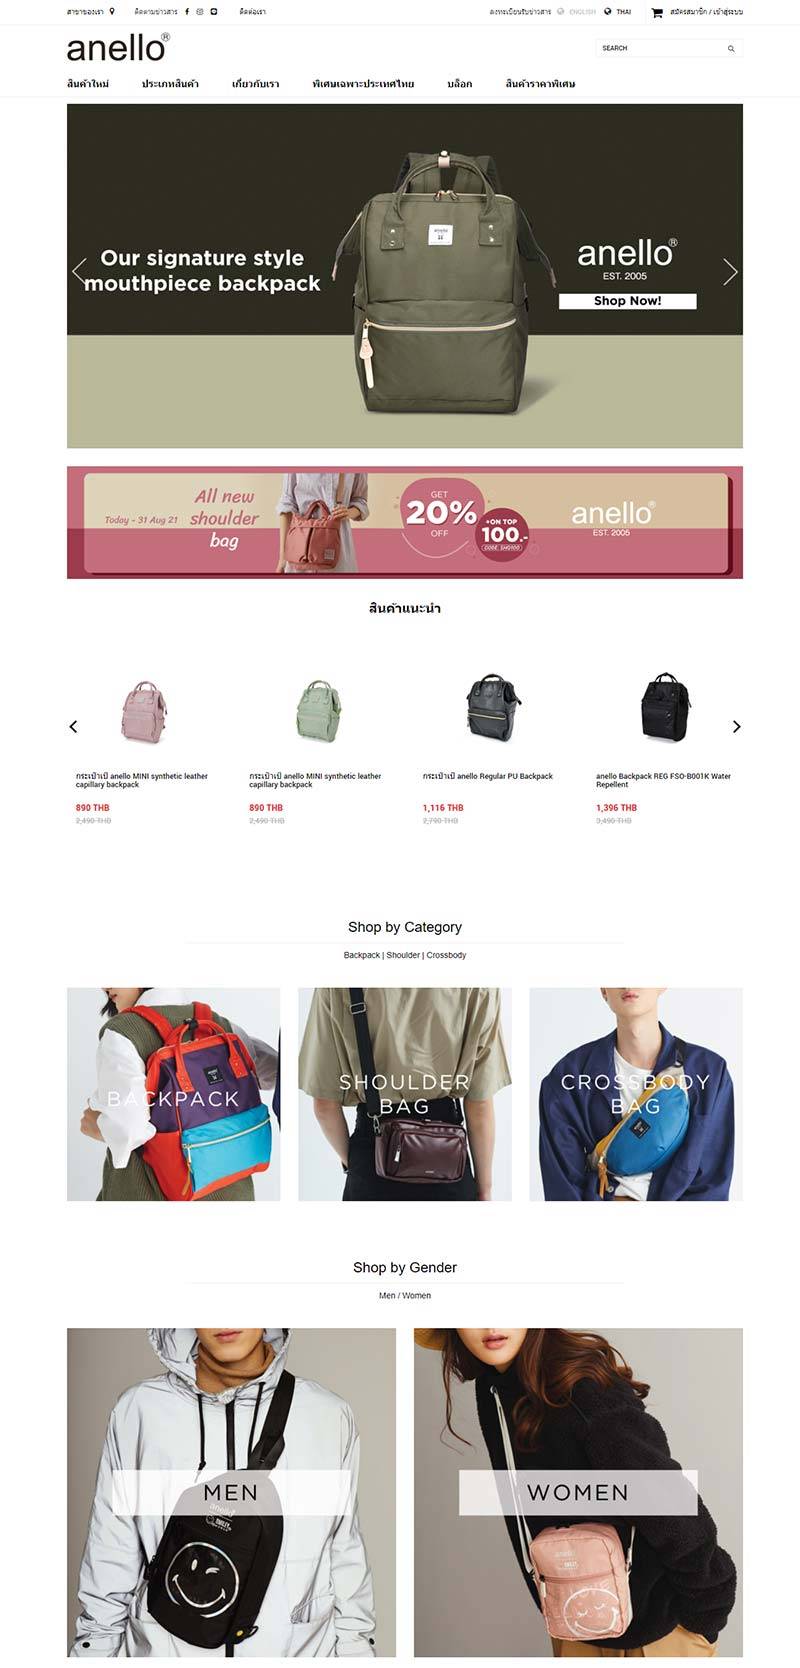 Anello 日本包袋品牌泰国官网